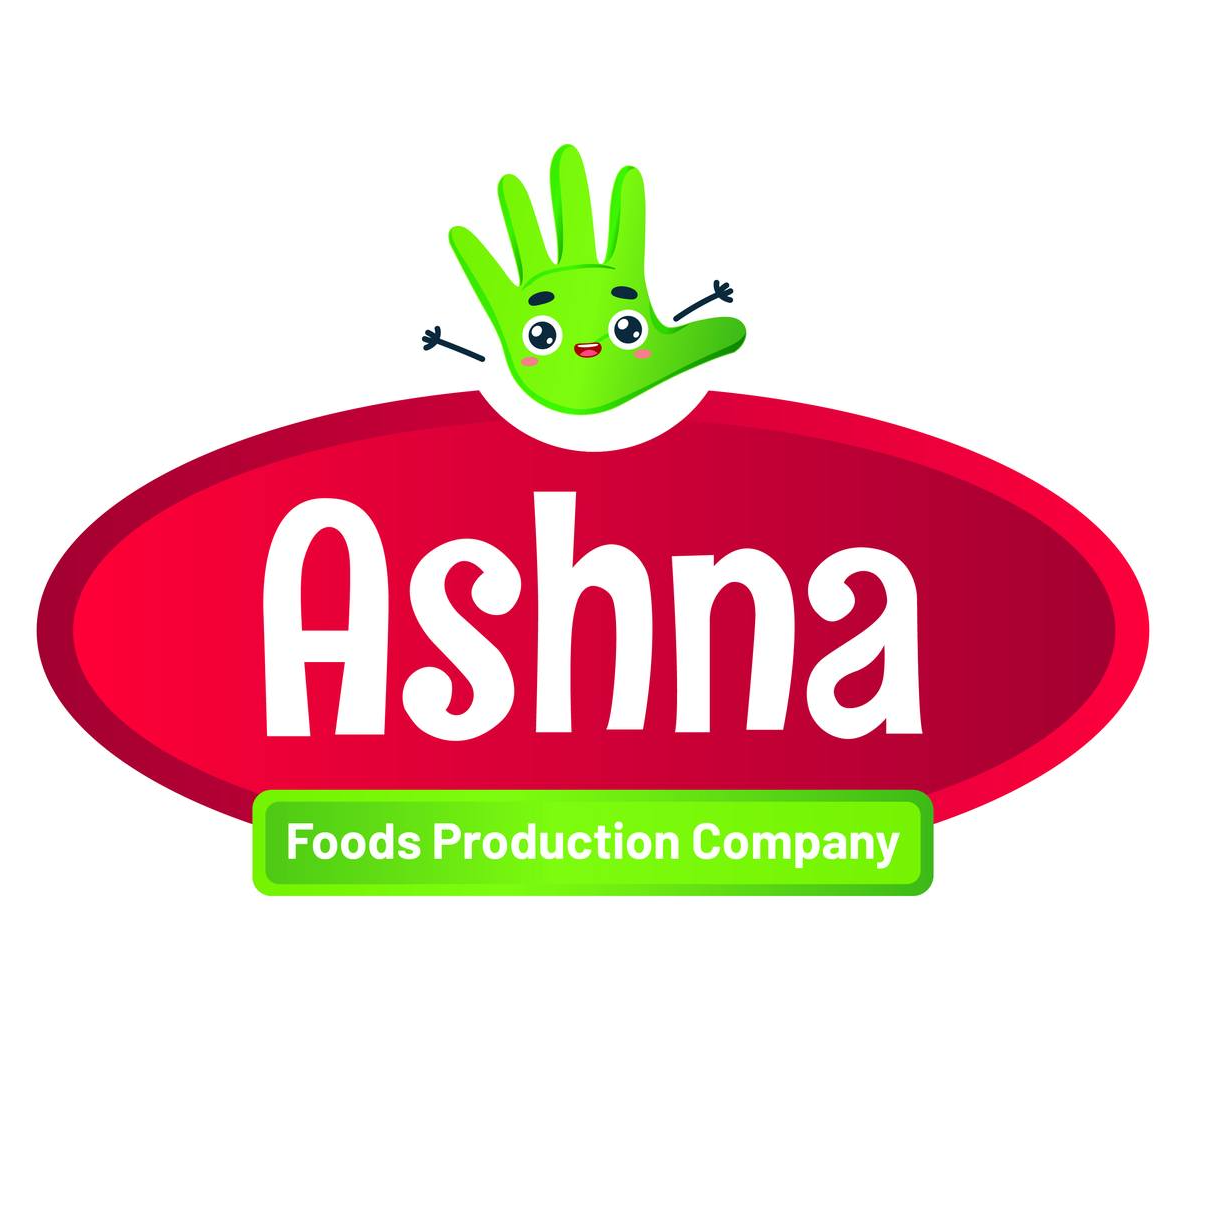 Ashna Foods Production Company